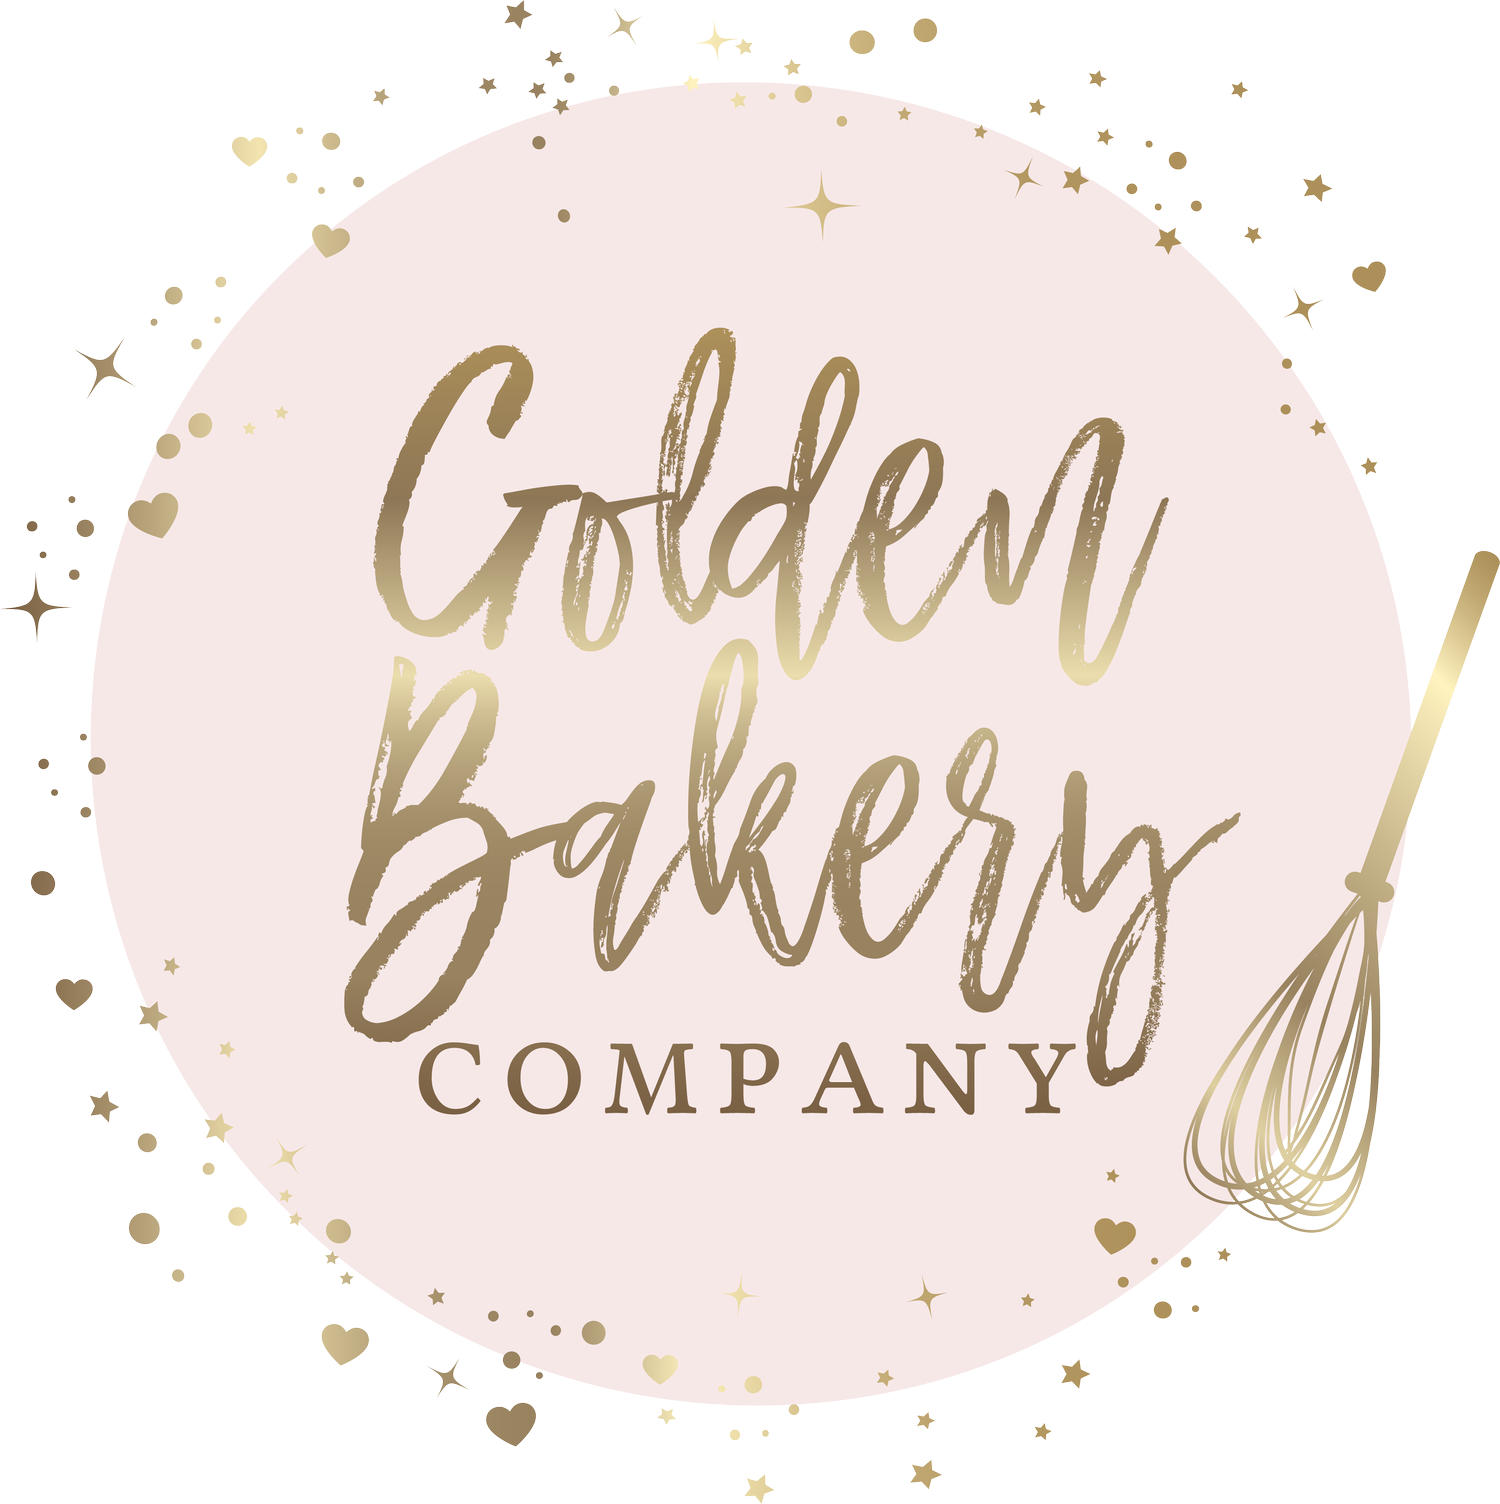 Golden Bakery Company